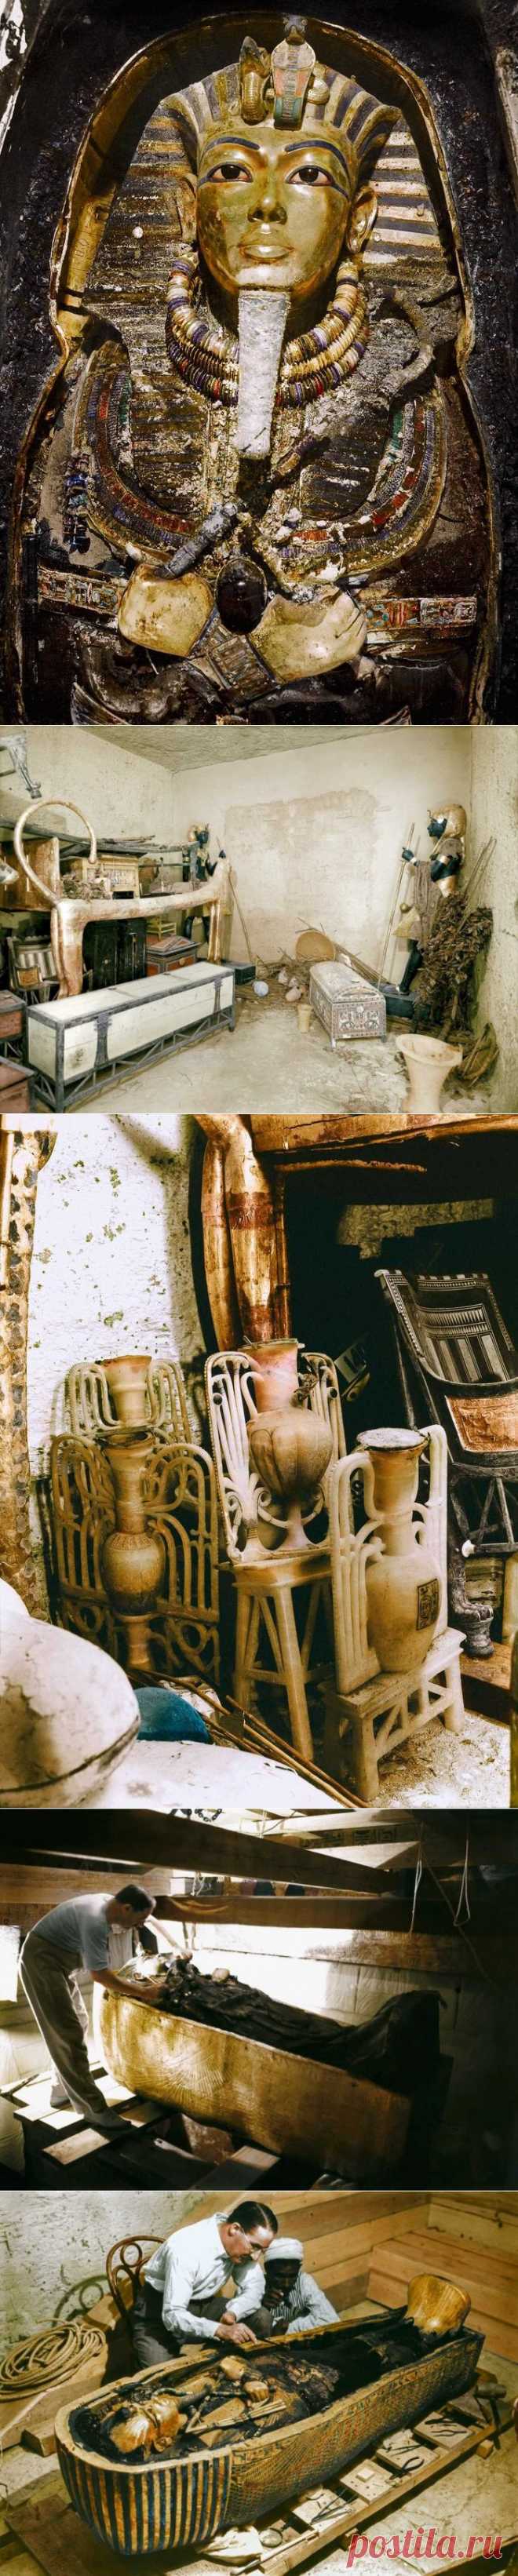 Как открывали гробницу Тутанхомона (фотохроника) — Наука и жизнь